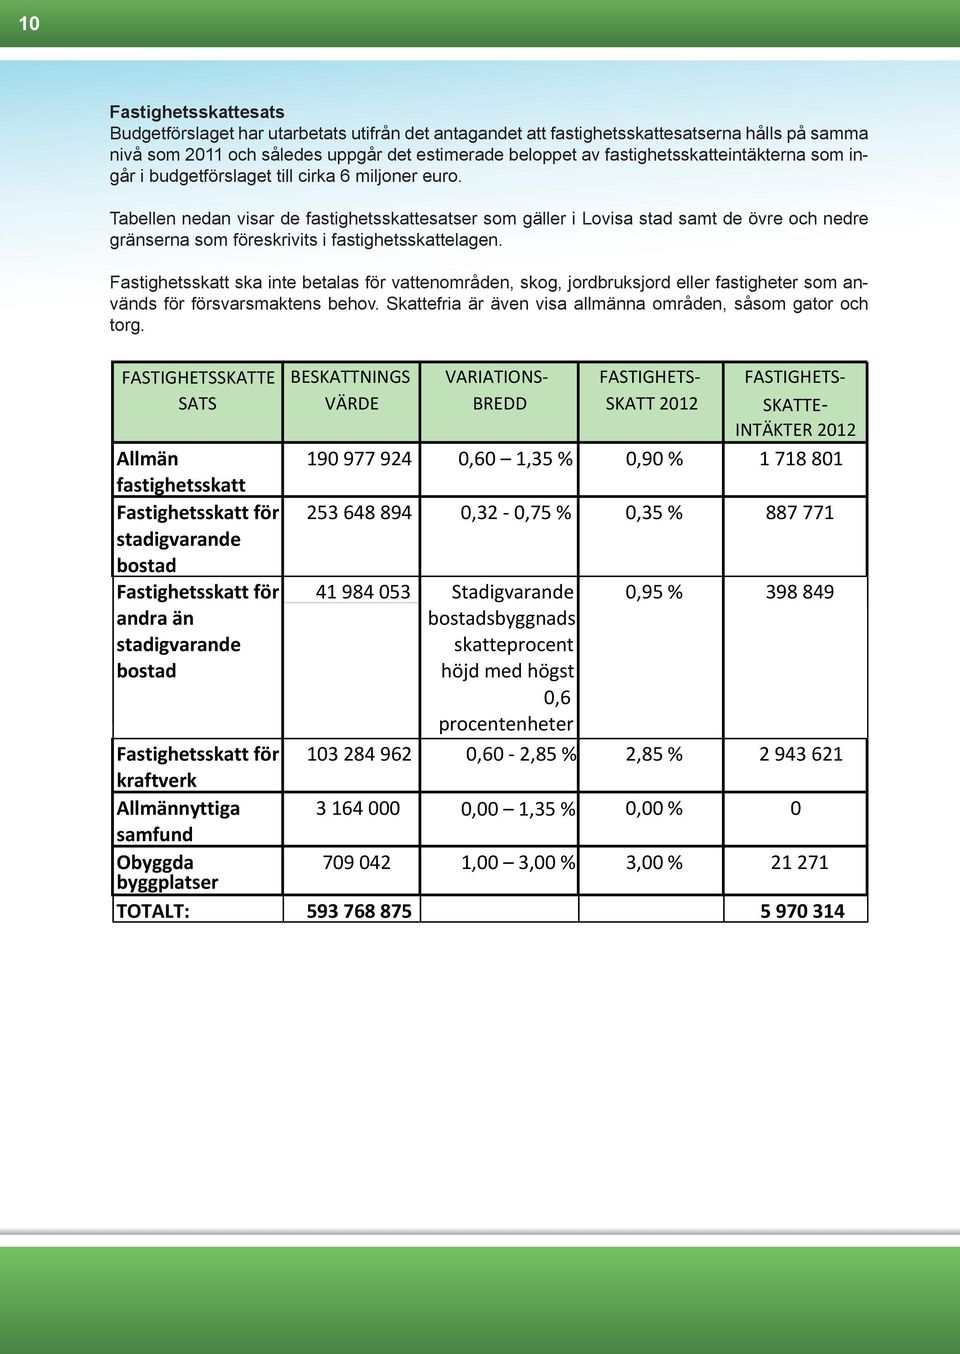 Tabellen nedan visar de fastighetsskattesatser som gäller i Lovisa stad samt de övre och nedre gränserna som föreskrivits i fastighetsskattelagen.